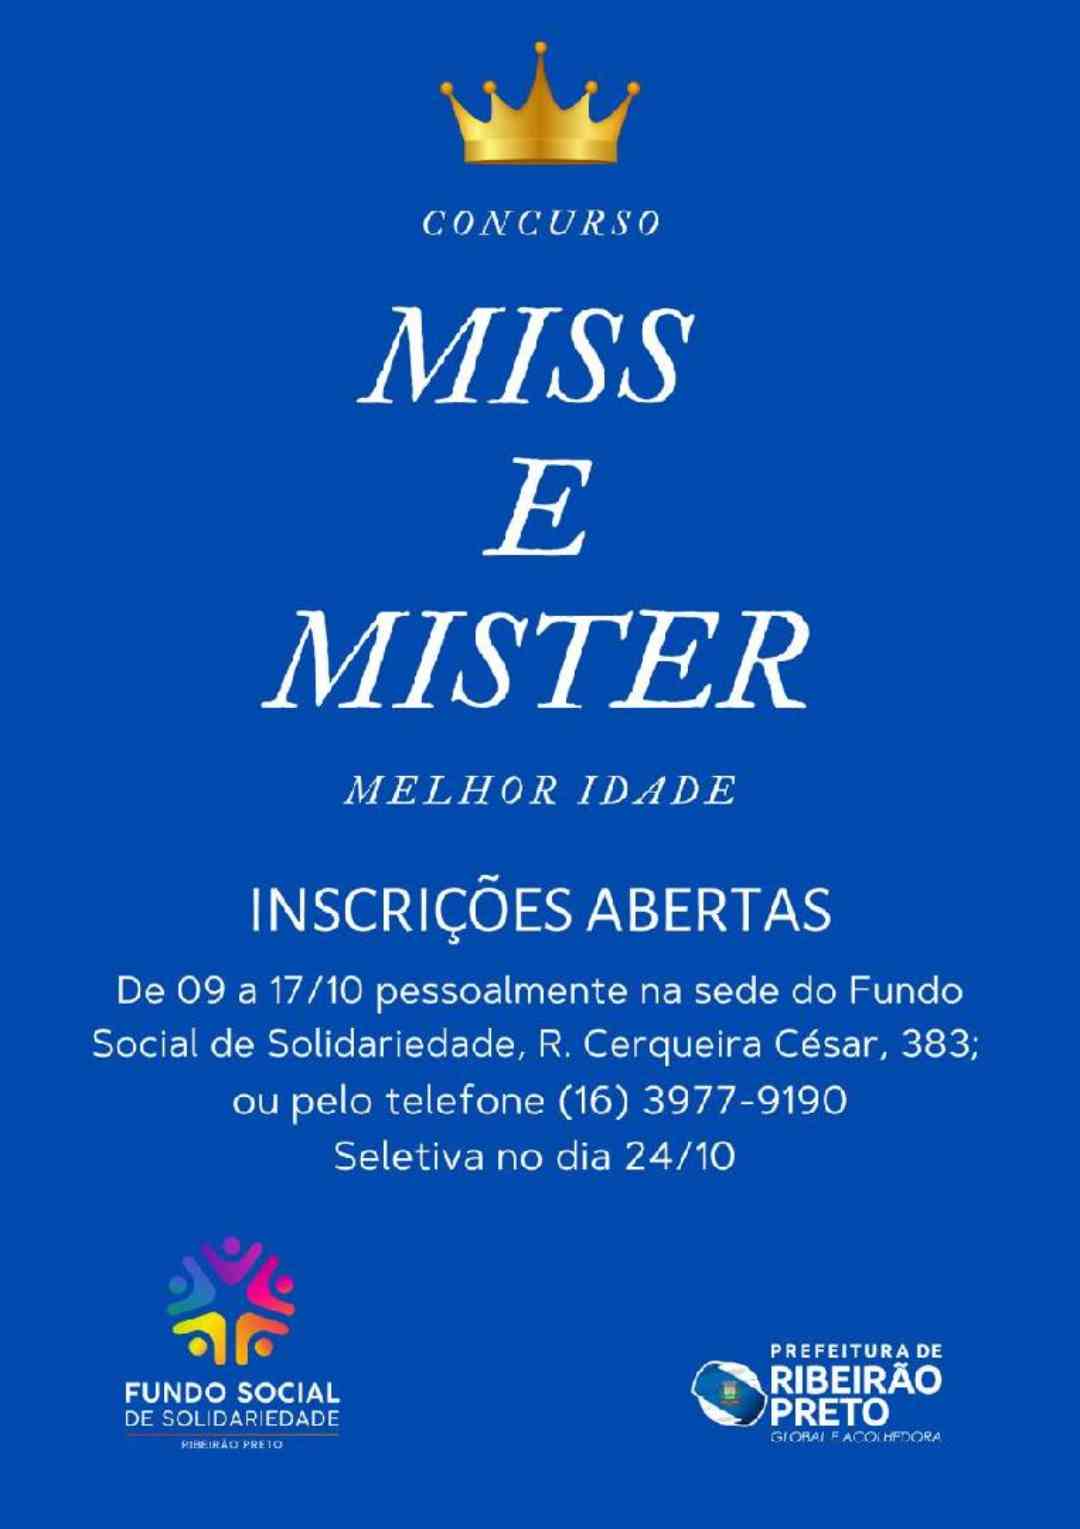 Fundo Social de Solidariedade lança concurso “Miss e Mister Melhor Idade 2023”